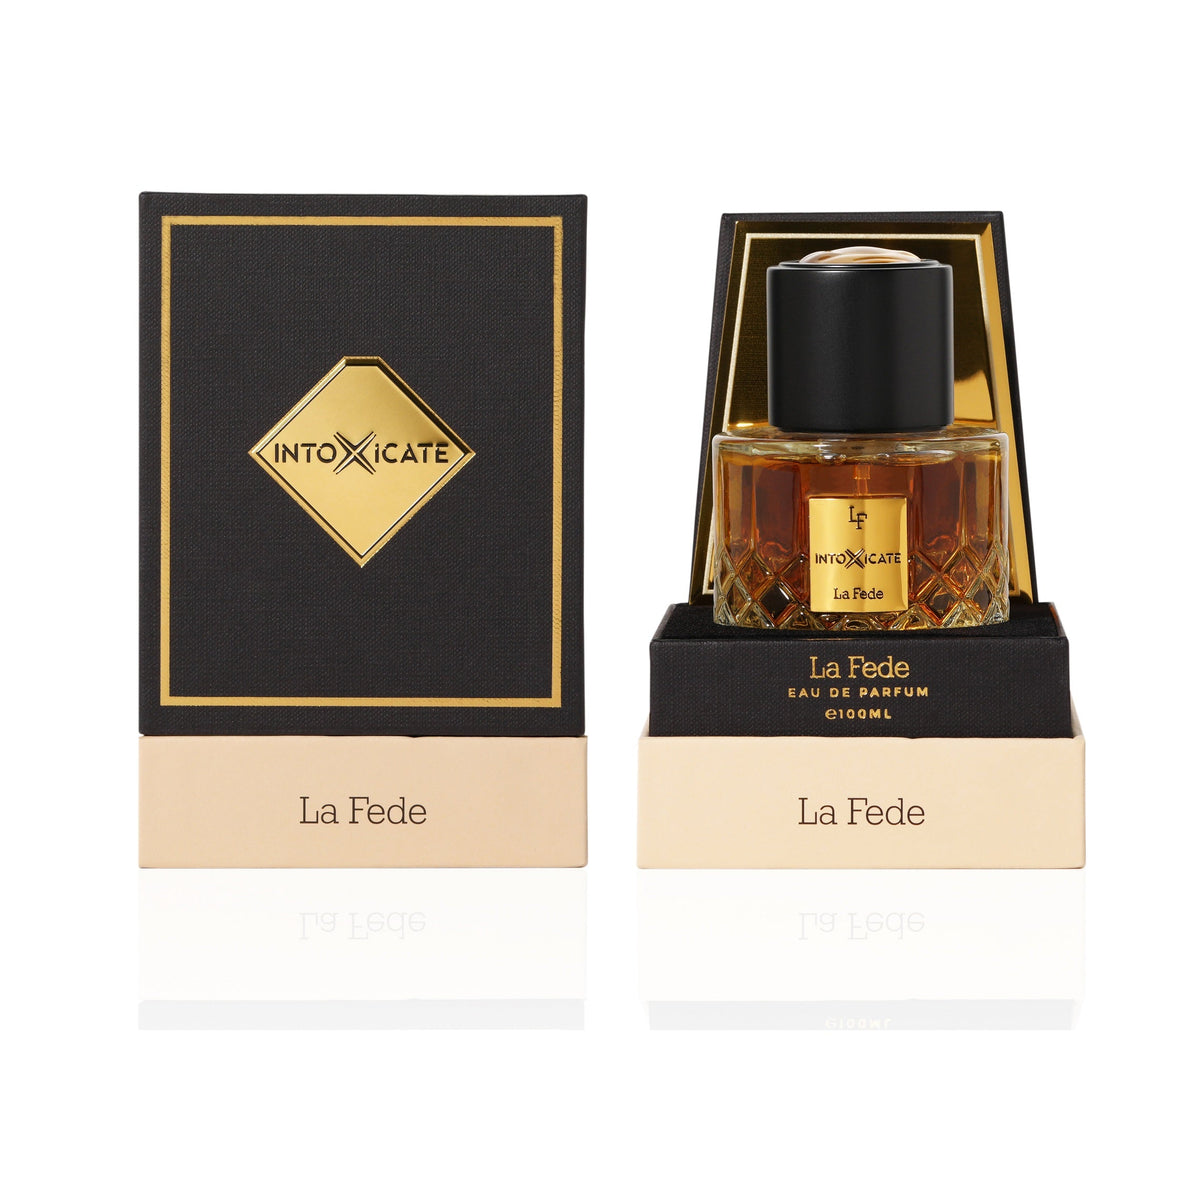 La Fede Into x icate 100ml Unisex Perfume